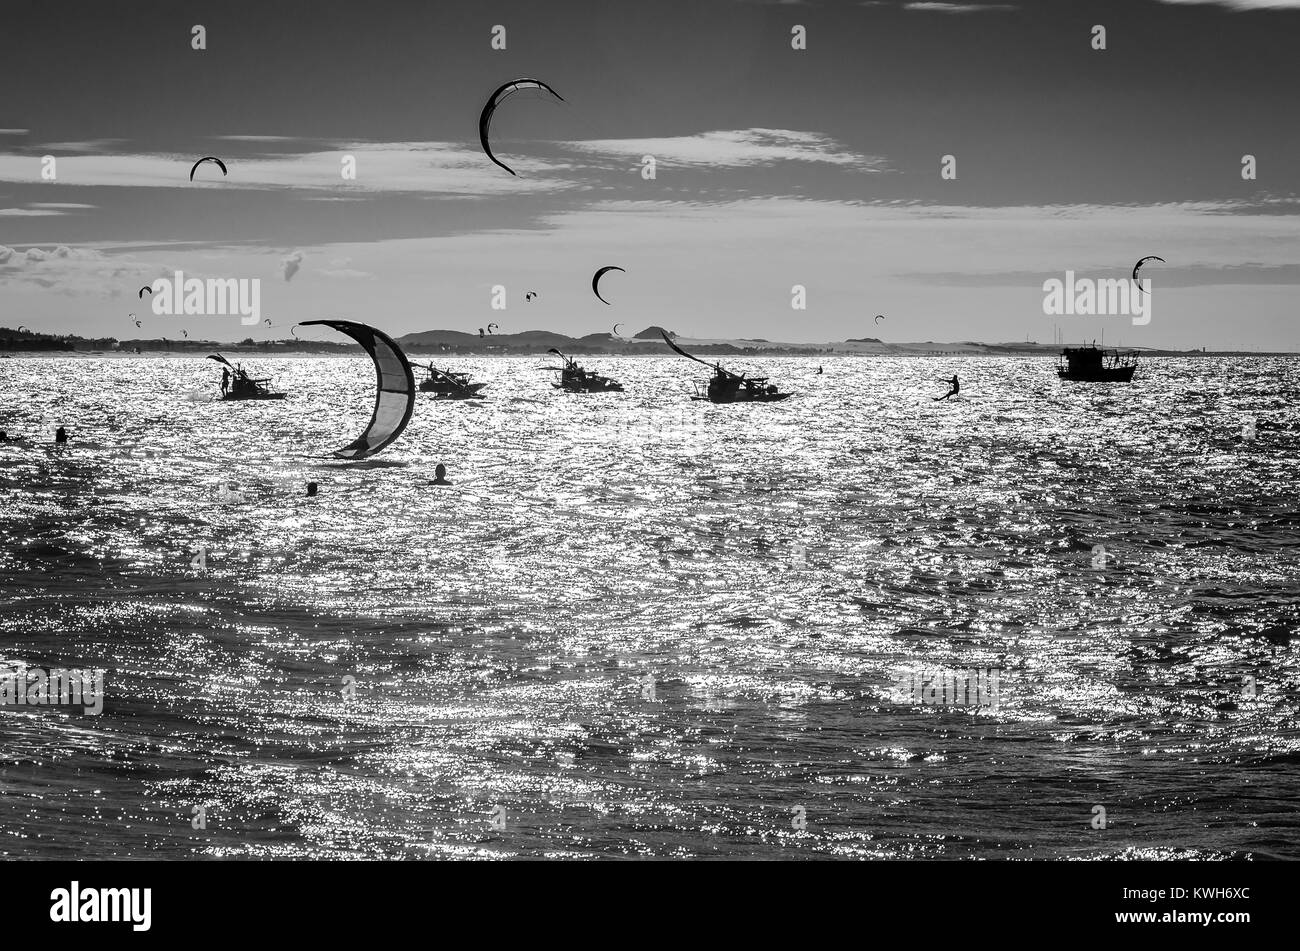 In bianco e nero al tramonto con kite surfers godendo il mare alla sera Foto Stock